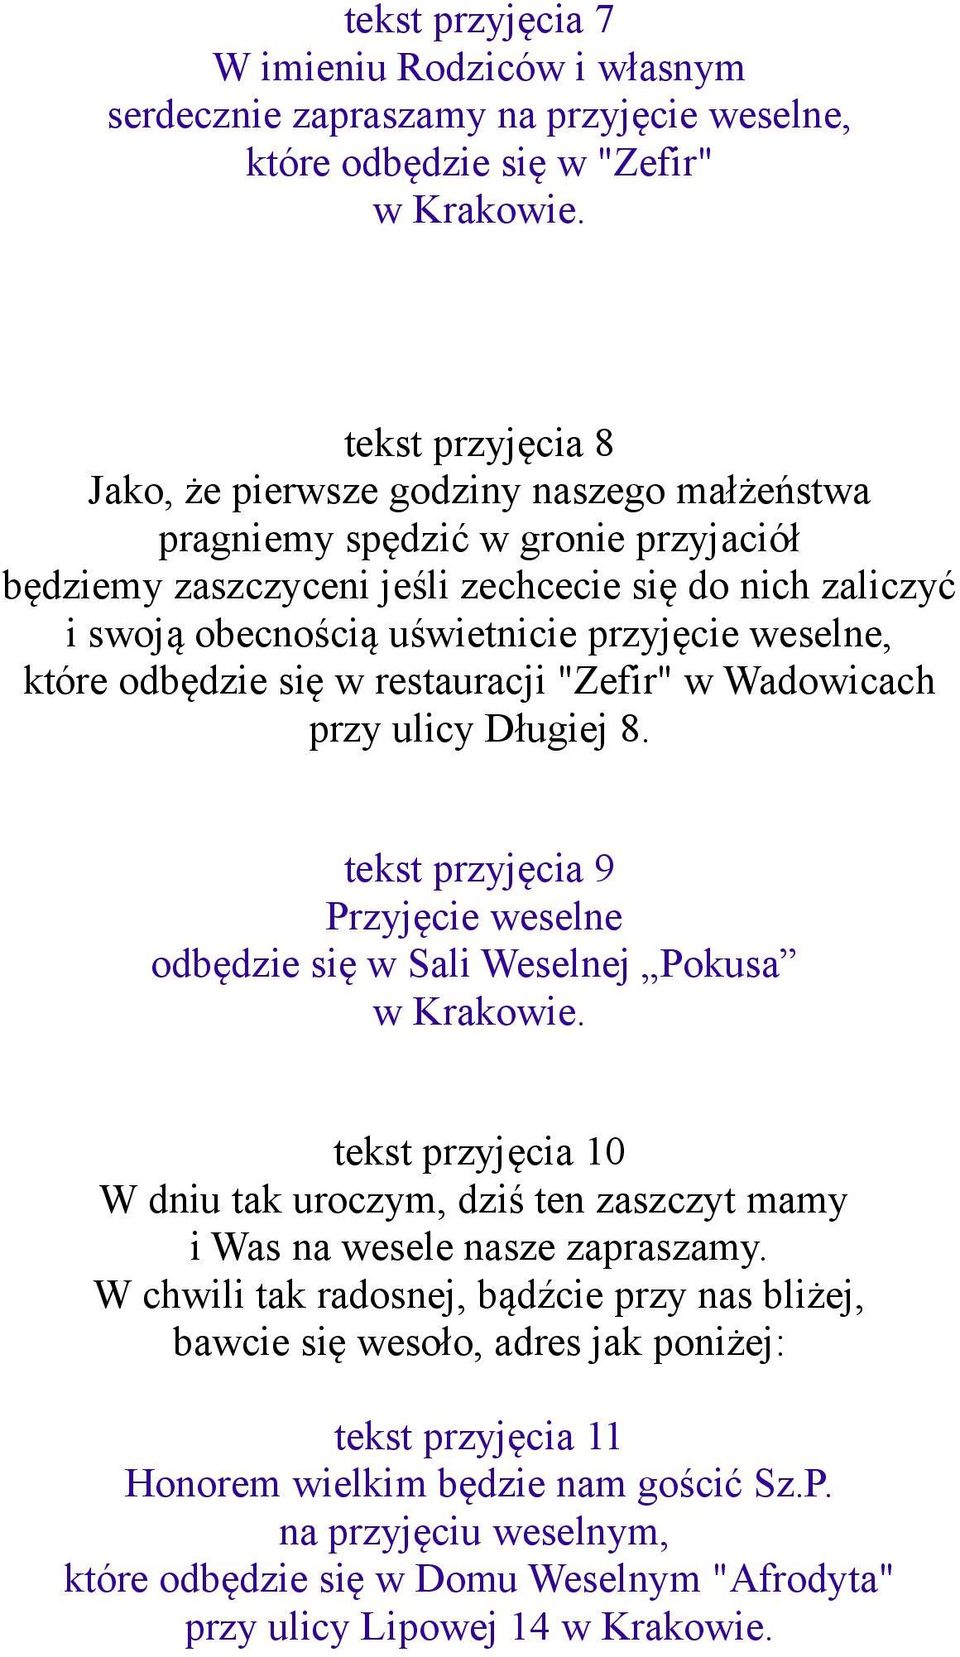 weselne, które odbędzie się w restauracji "Zefir" w Wadowicach przy ulicy Długiej 8. tekst przyjęcia 9 Przyjęcie weselne odbędzie się w Sali Weselnej Pokusa w Krakowie.